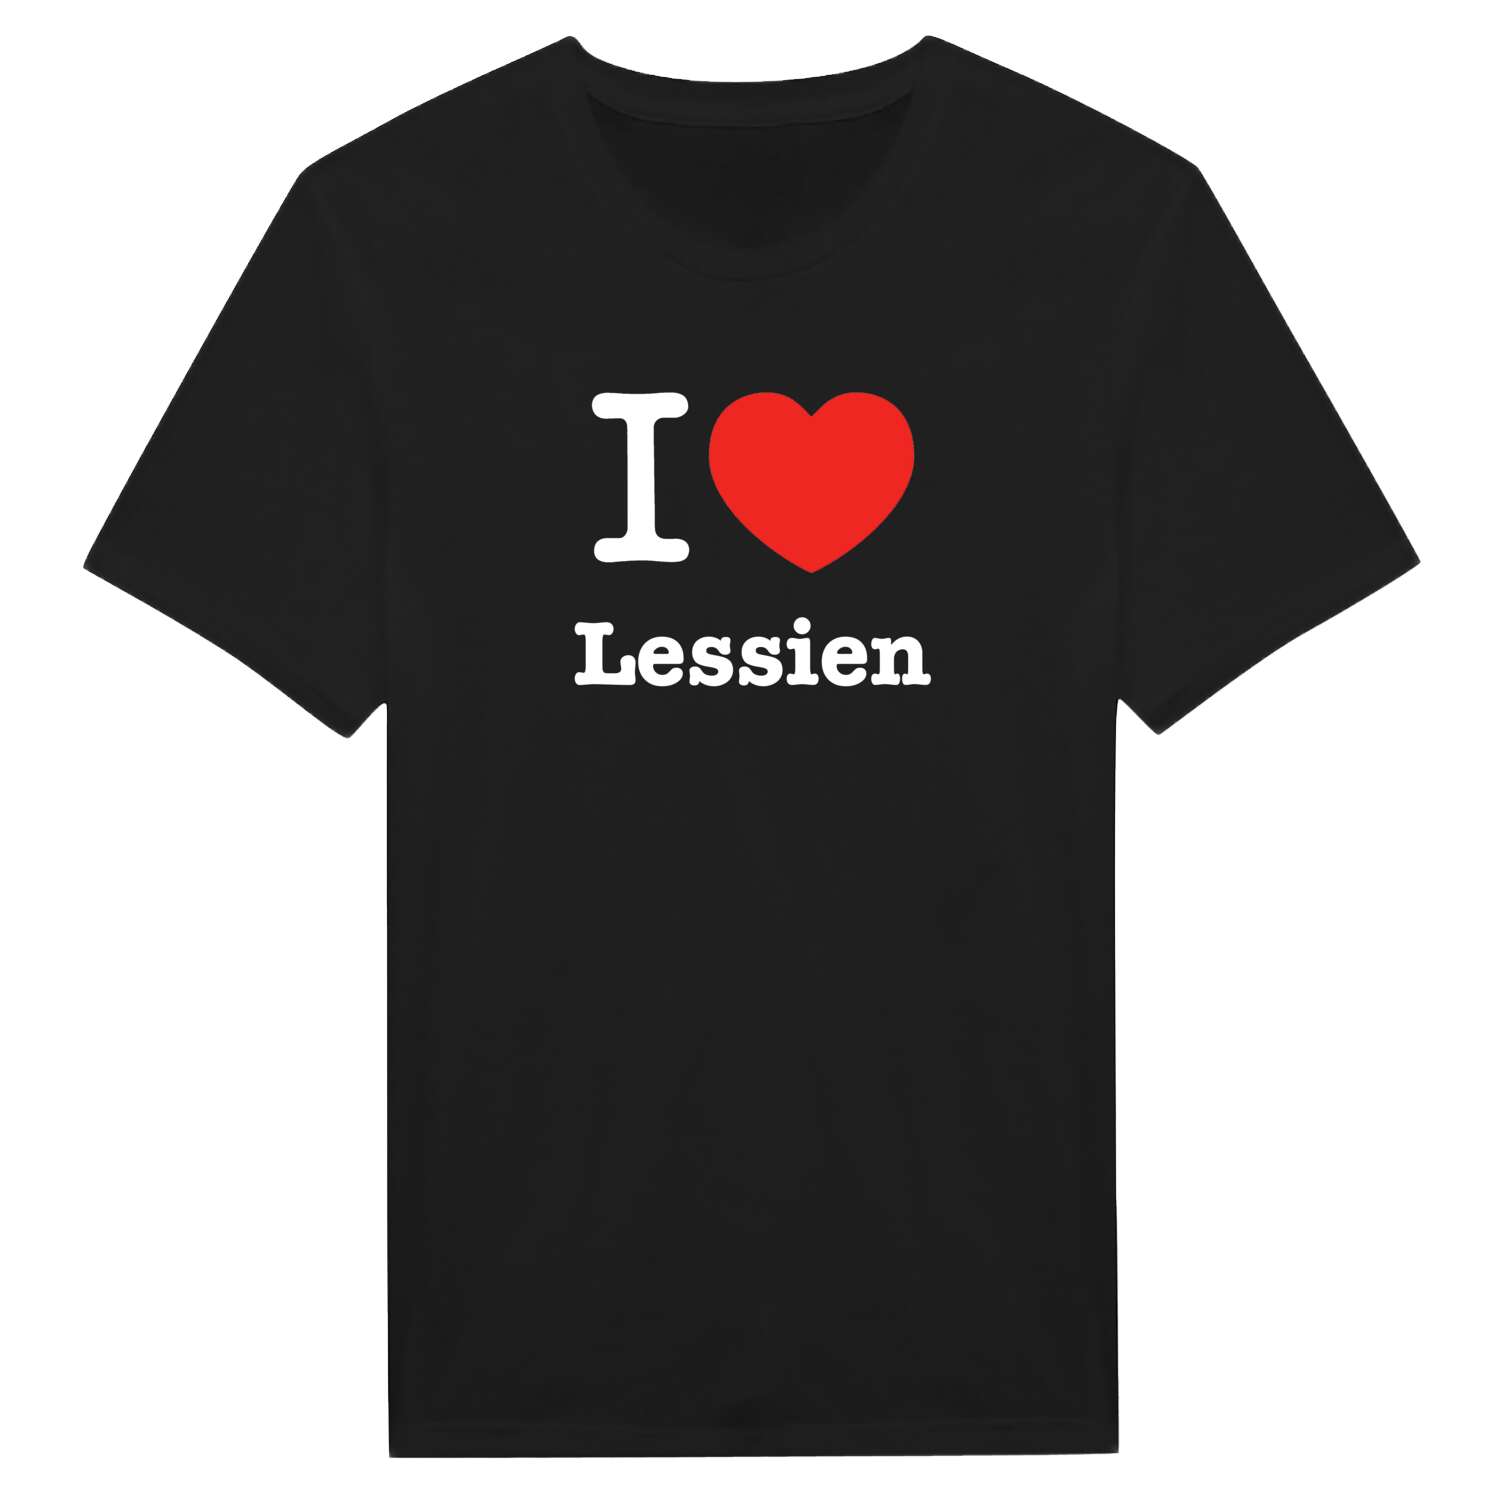 Lessien T-Shirt »I love«